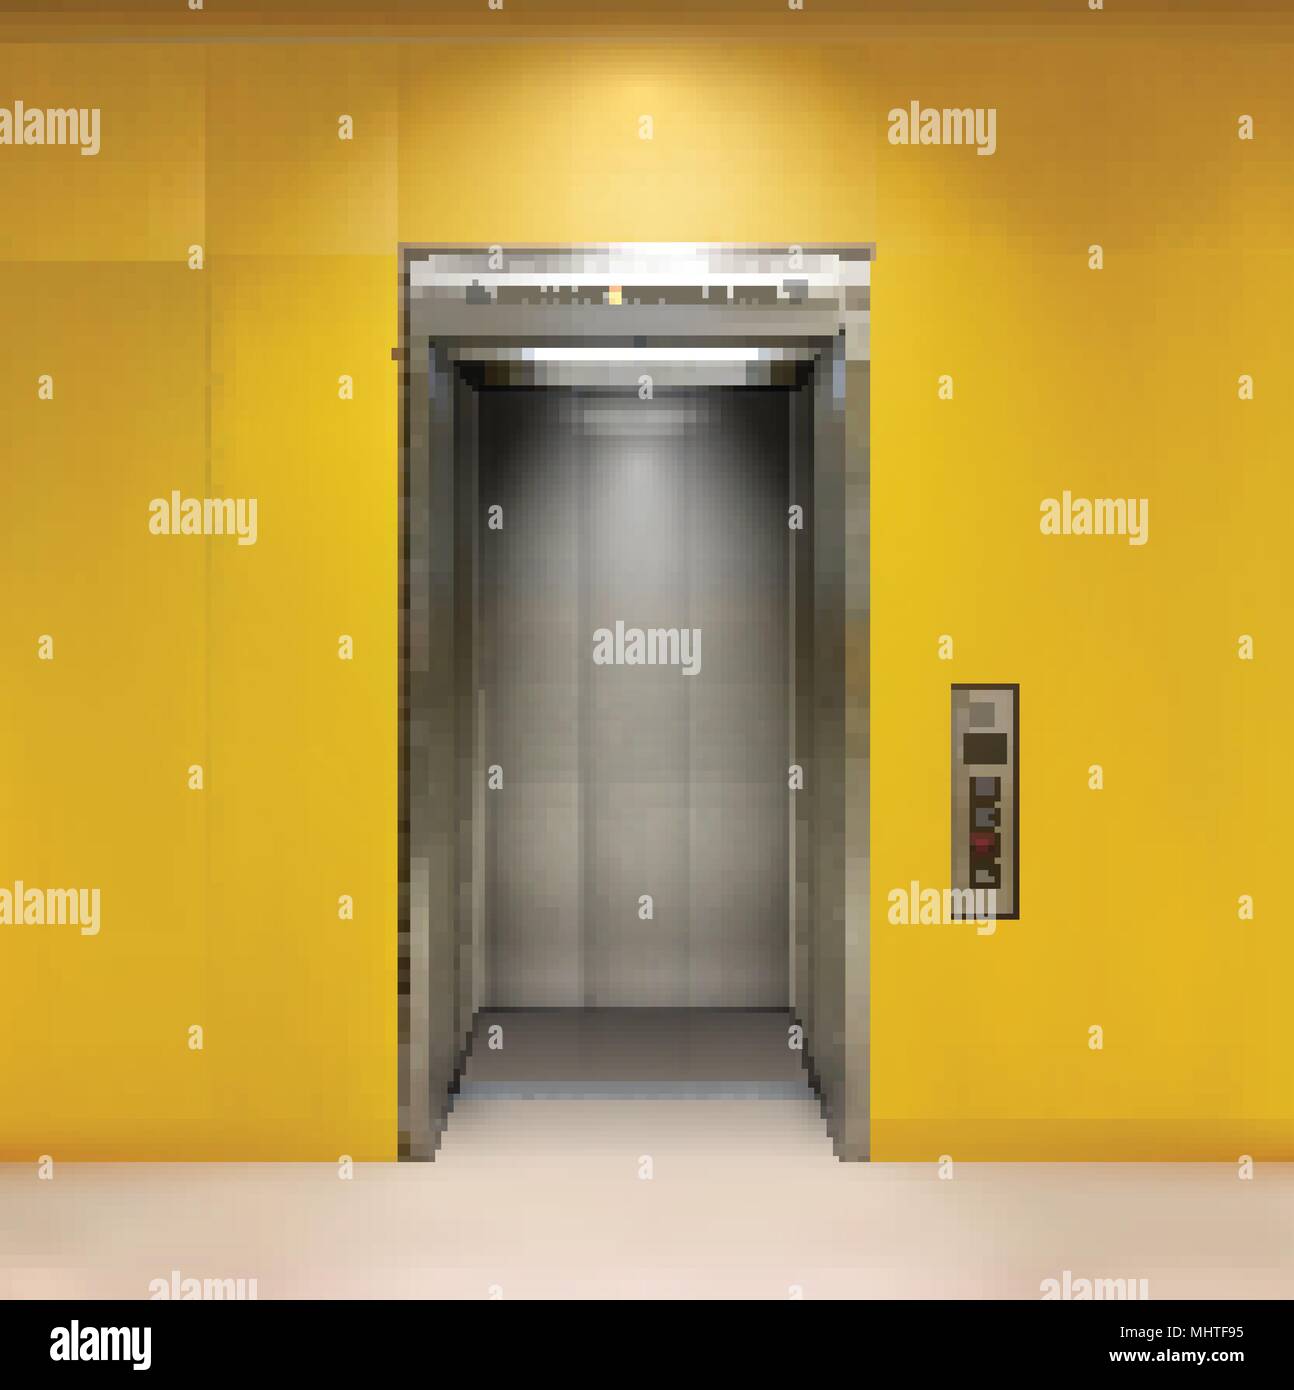 Immeuble de bureau en métal chromé porte de l'ascenseur. La variante ouverte et fermée. Vector illustration réaliste de mur jaune ascenseur immeuble de bureaux. Illustration de Vecteur